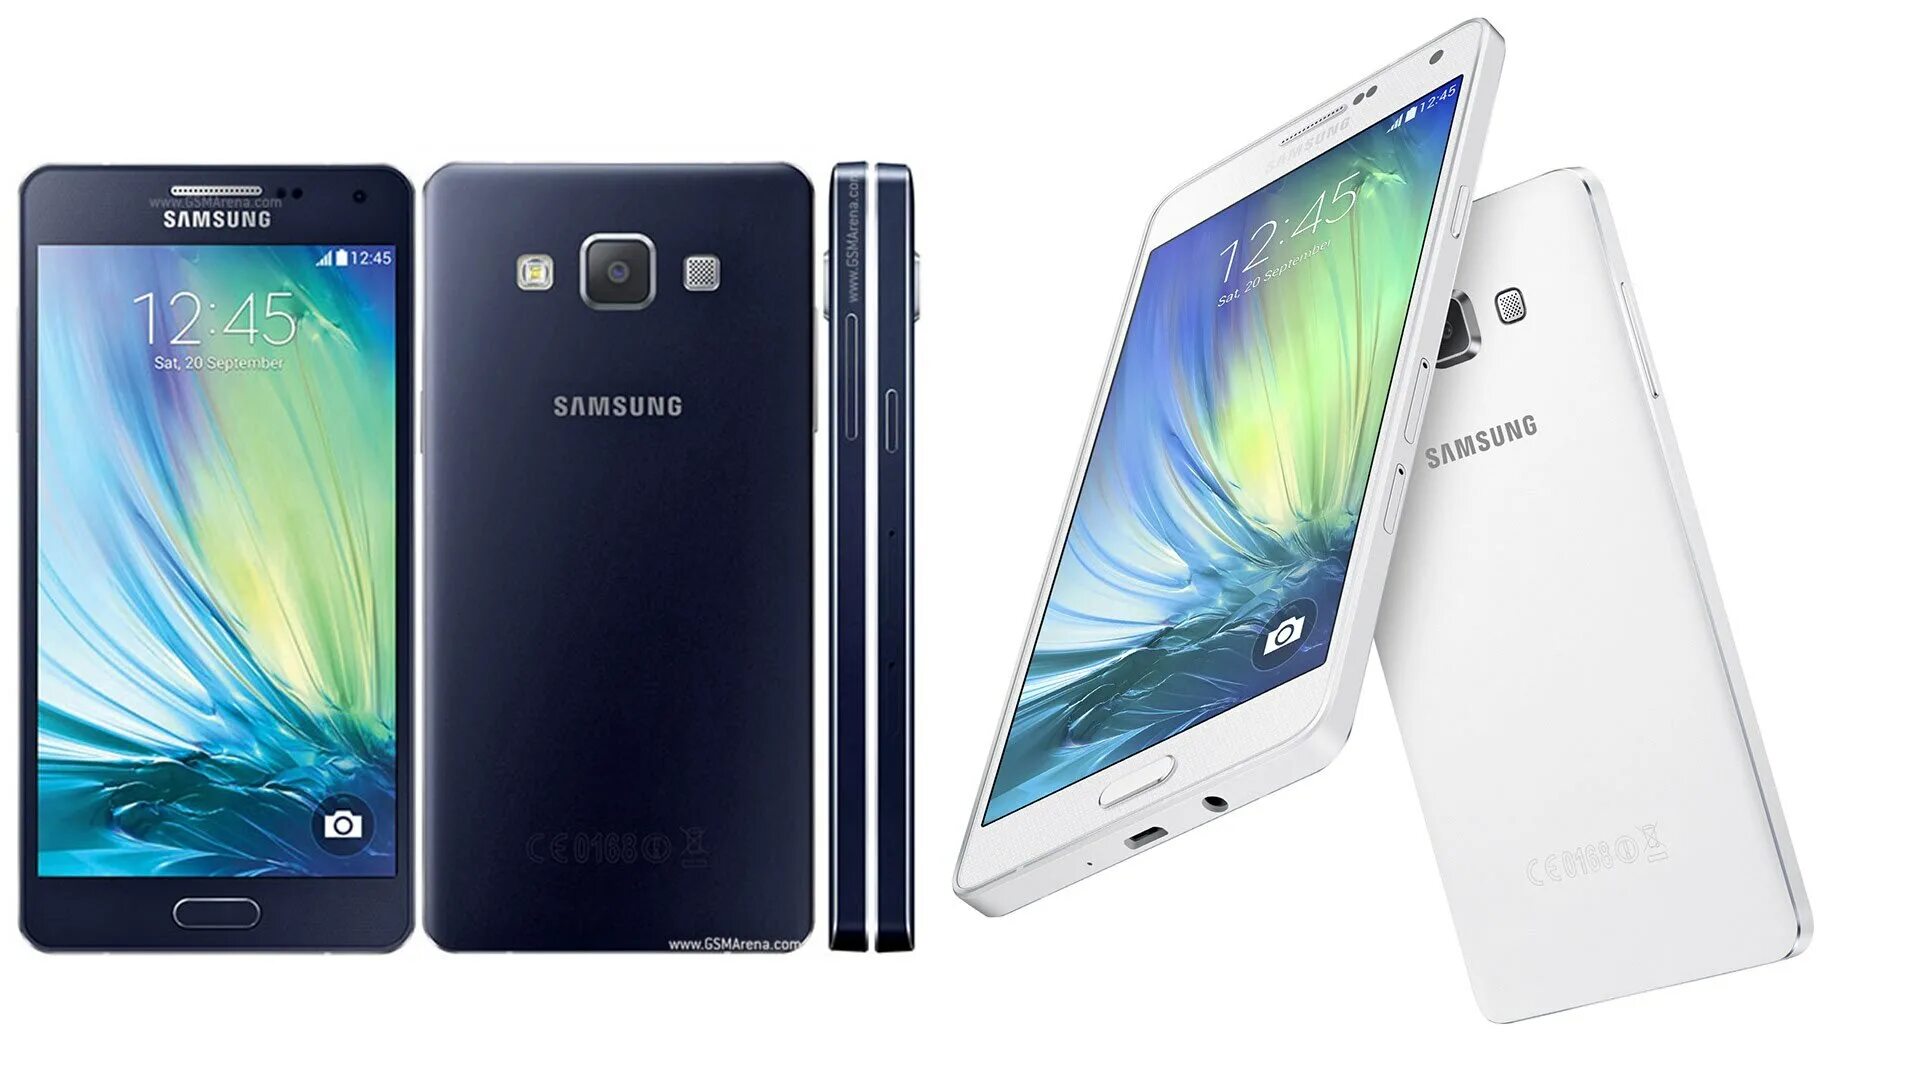 Samsung galaxy a 0 5. Samsung Galaxy a7. Самсунг галакси а53. Самсунг галакси а7 2015. Samsung Galaxy a5 2015.